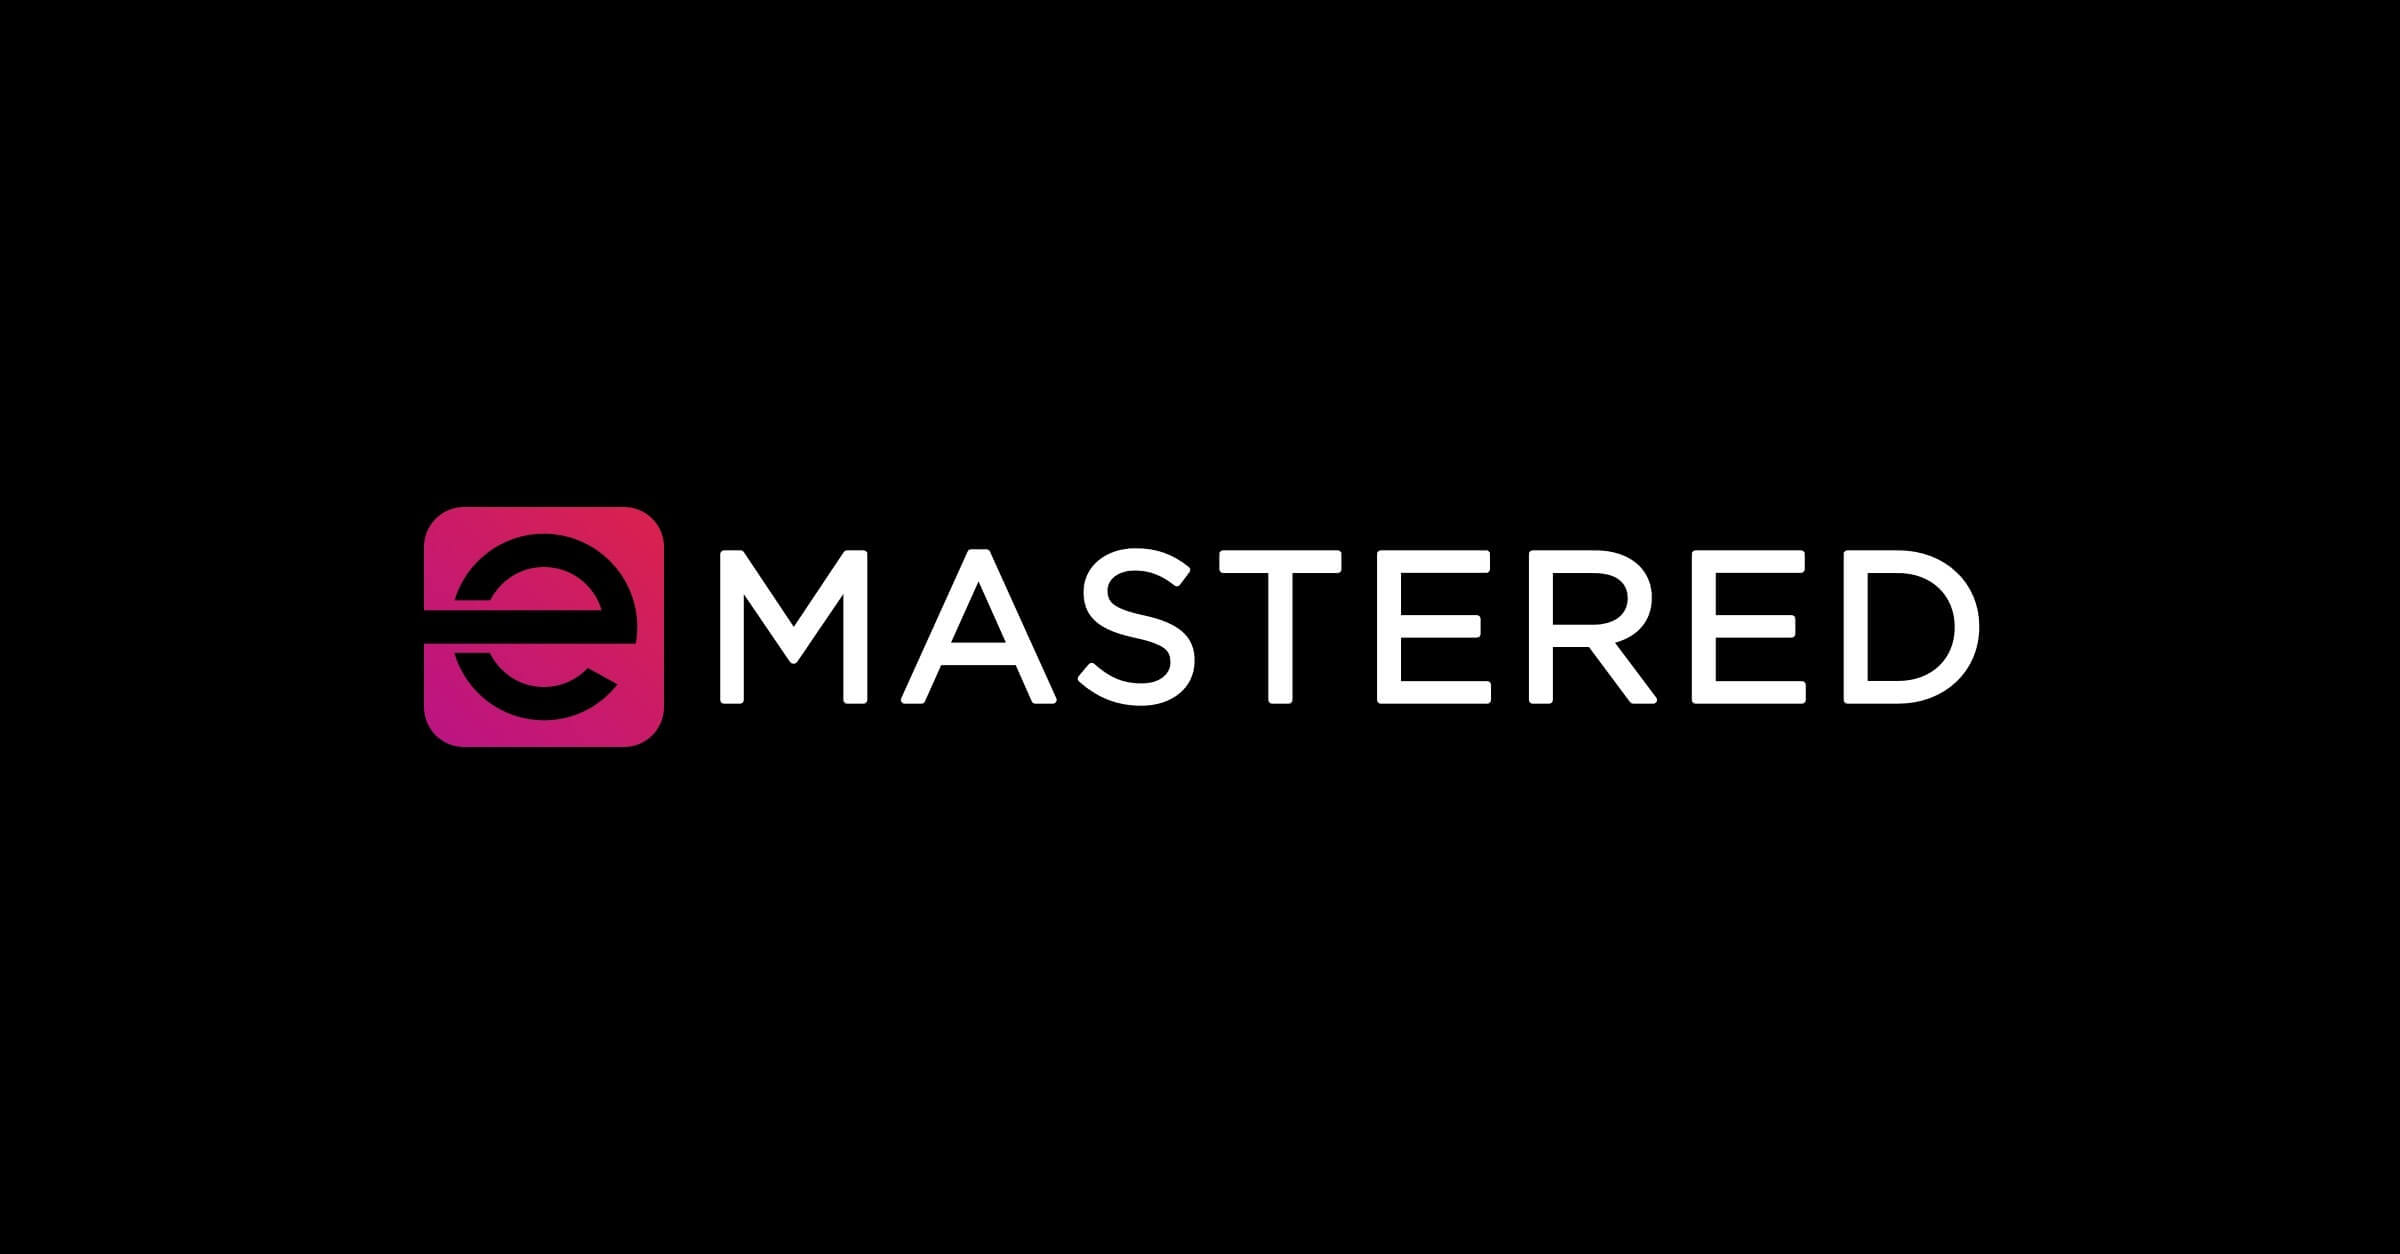 EMASTERED - Ein Online -Mastering -Tool zur Verbesserung des Klangs von Musiktracks